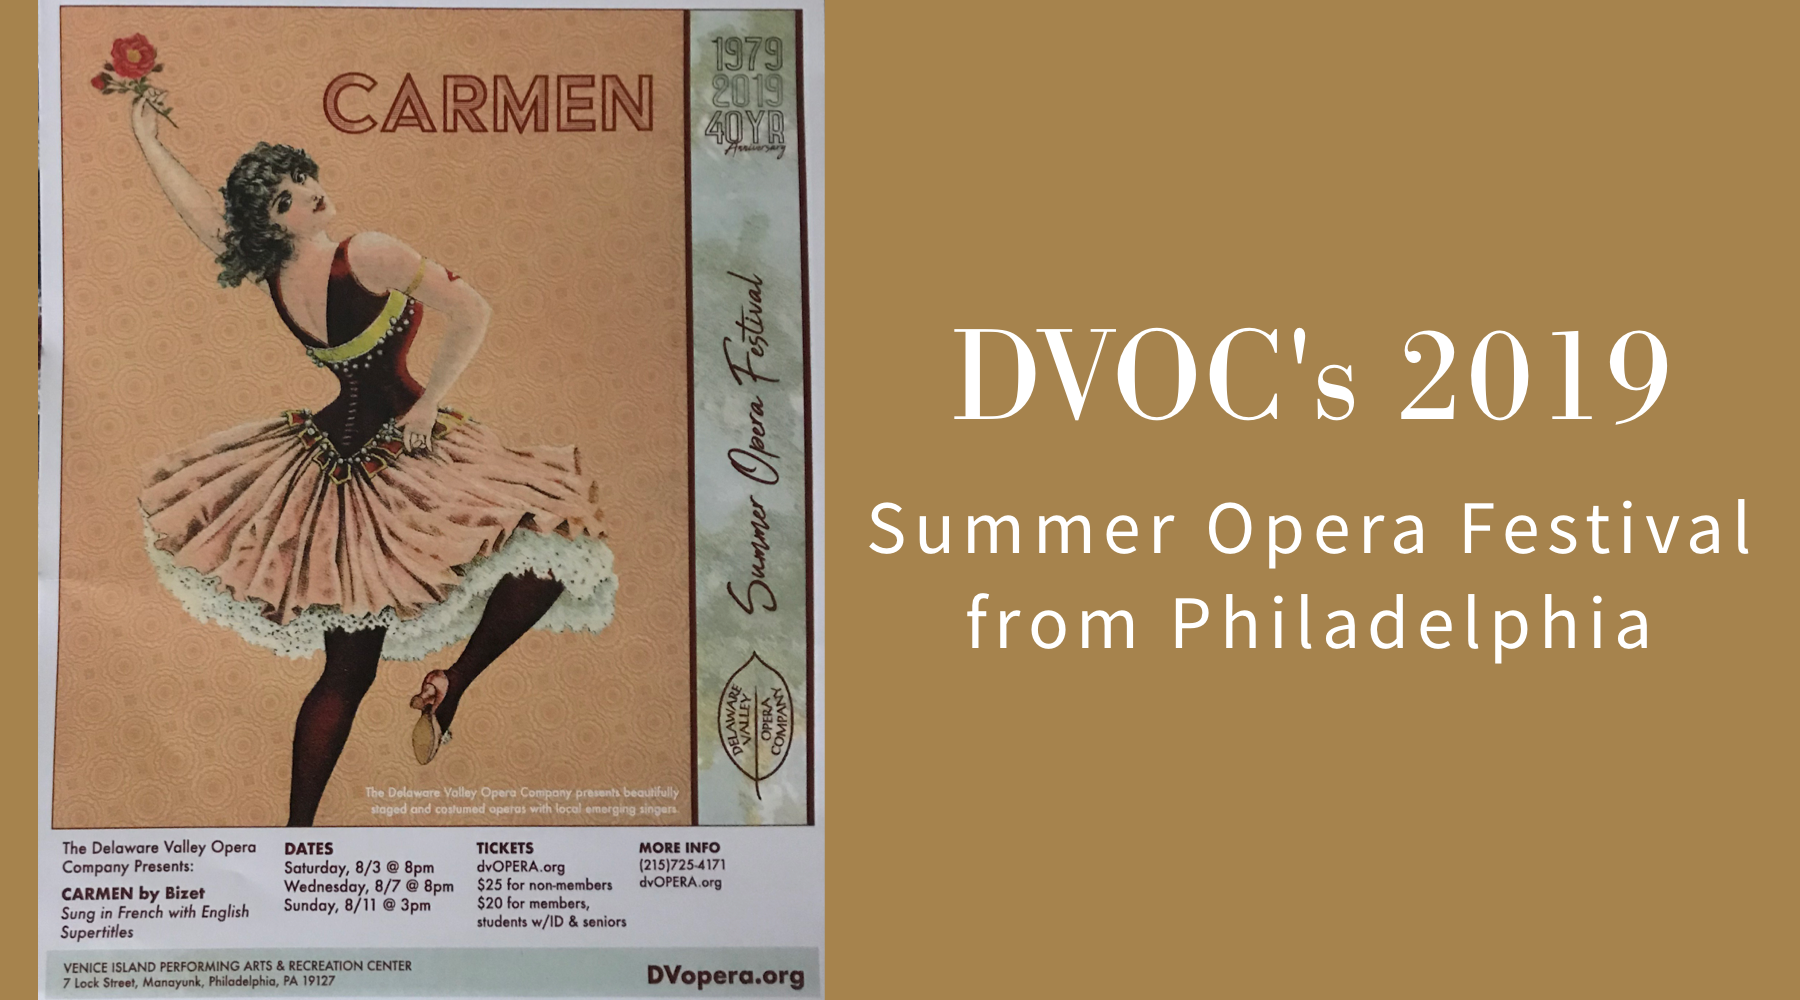 DVOC's 2019 Summer Opera Festival from Philadelphia